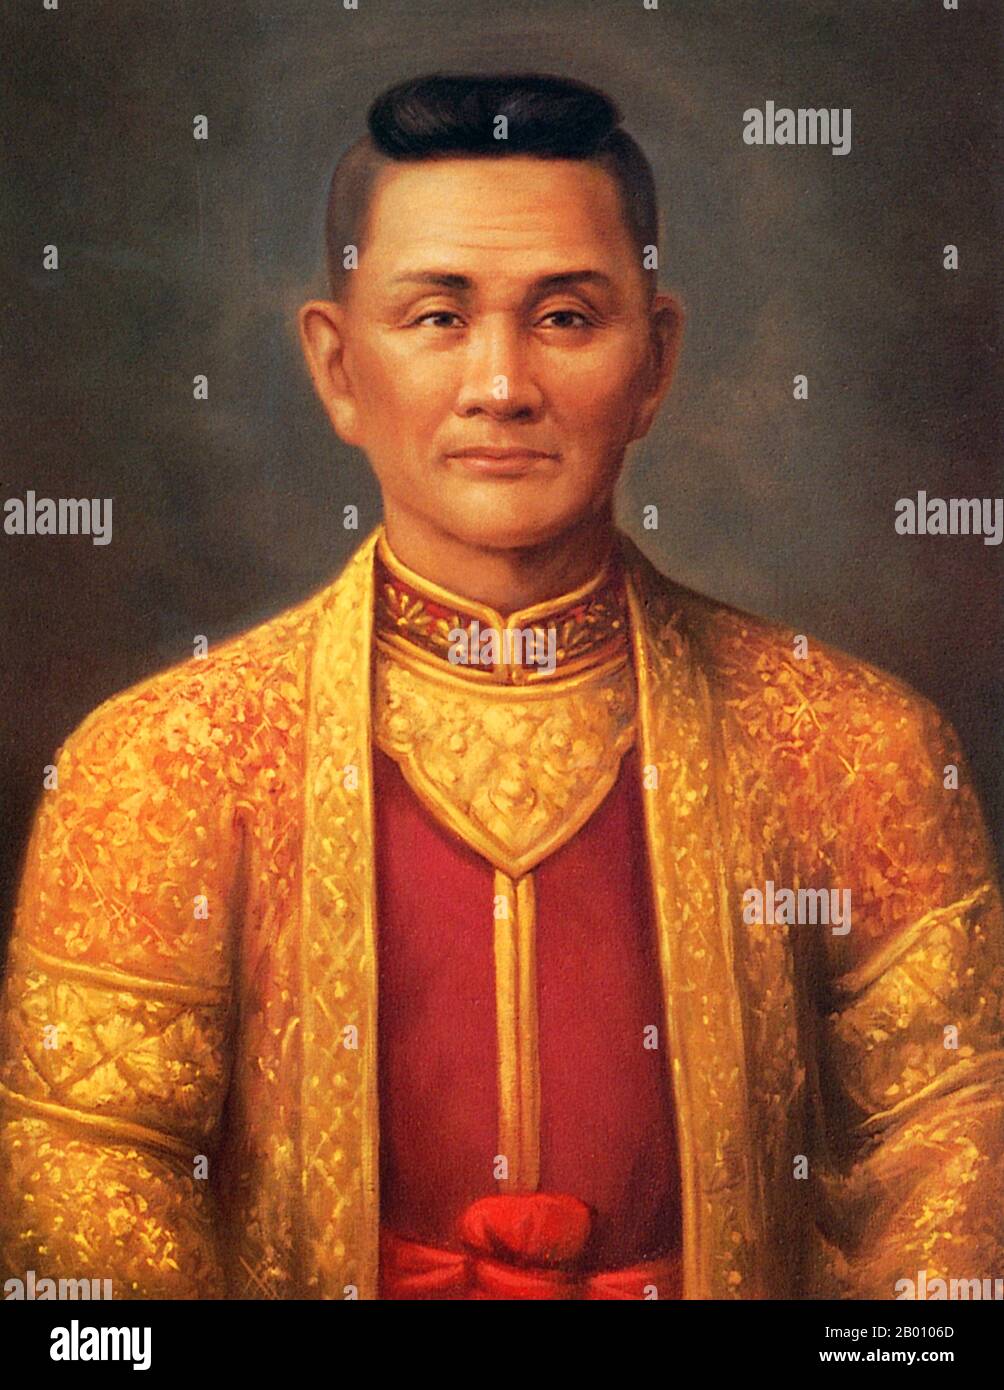 Thailand: Kawila, Chao (König) von Chiang Mai, 1775-1813. Erster herr der Chao Chet Ton Dynastie. Ein Spross der Chao Chet Ton Dynastie, der Chiang Mai und das ehemalige Königreich Lan Na als Nebenfluss der Siam Chakri Dynastie in Bangkok von 1775 bis 1939 regierte. Stockfoto